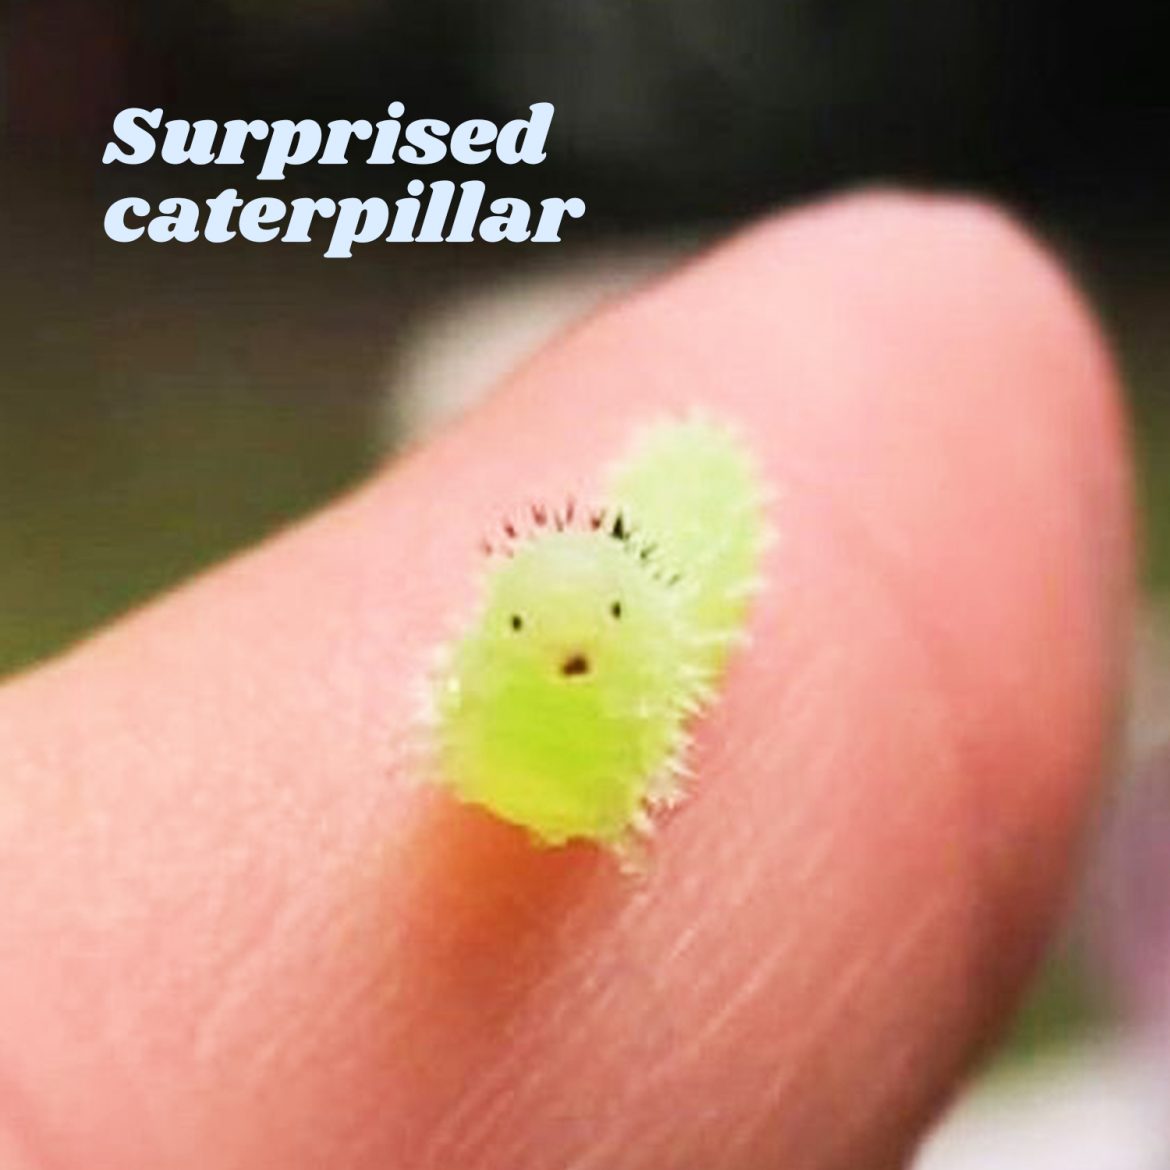 Surprised caterpillar